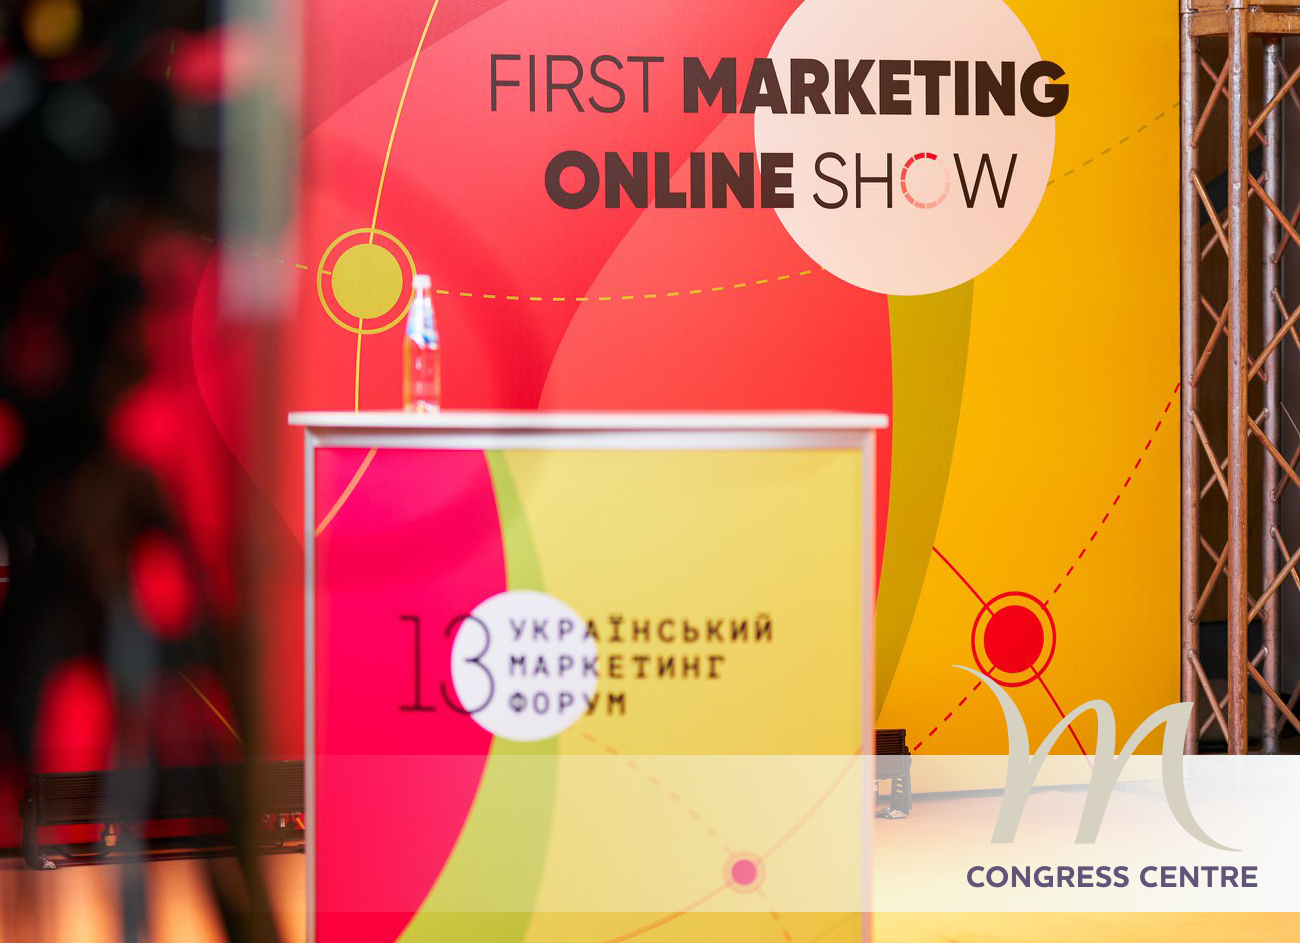 13-й Український Маркетинг-форум у Mercure Congress Centre